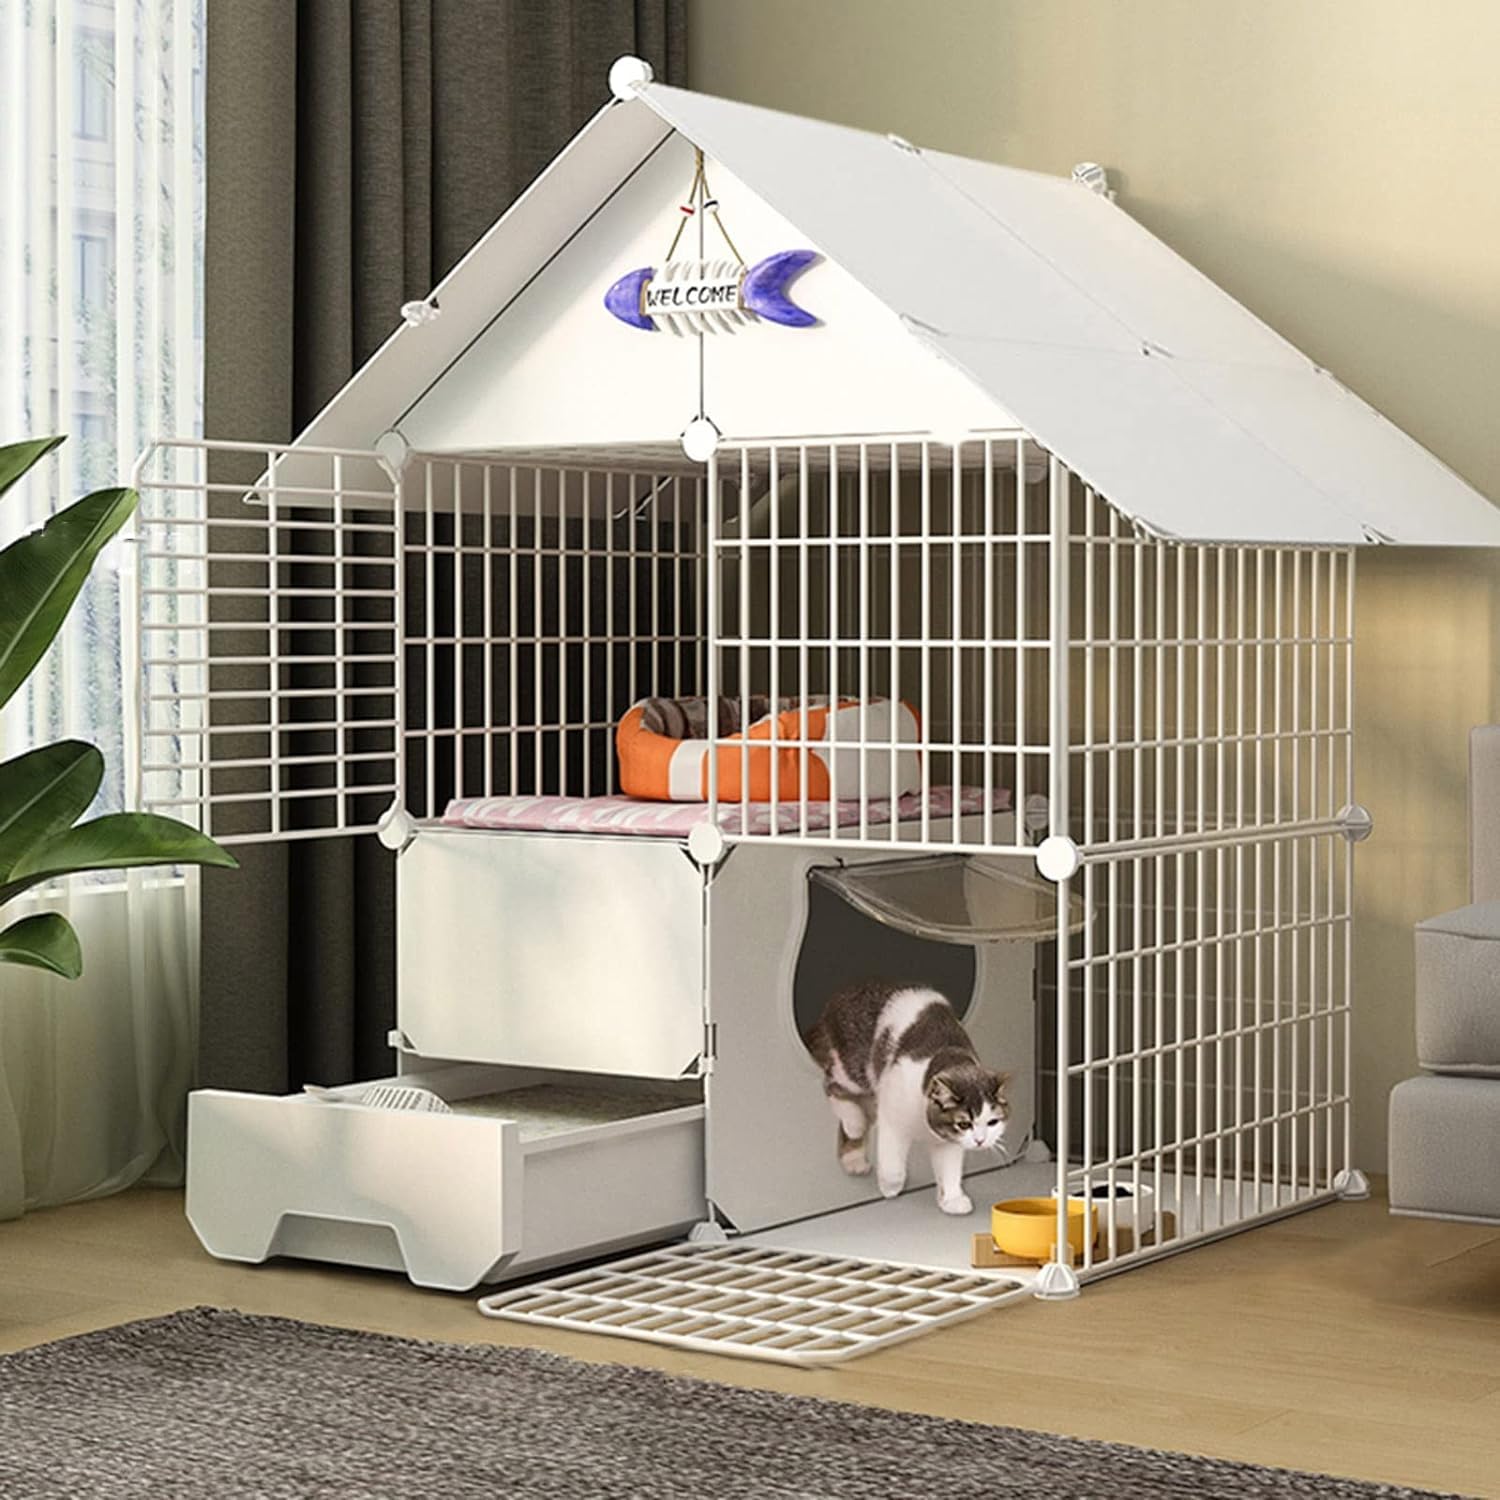 Mehrzweck-Haustierbox – abnehmbare Katzentoilette im Park-Stil aus Metall mit Tür und geschlossener Katzentoilette für Kätzchen, Kaninchen, Igel und andere kleine Haustiere